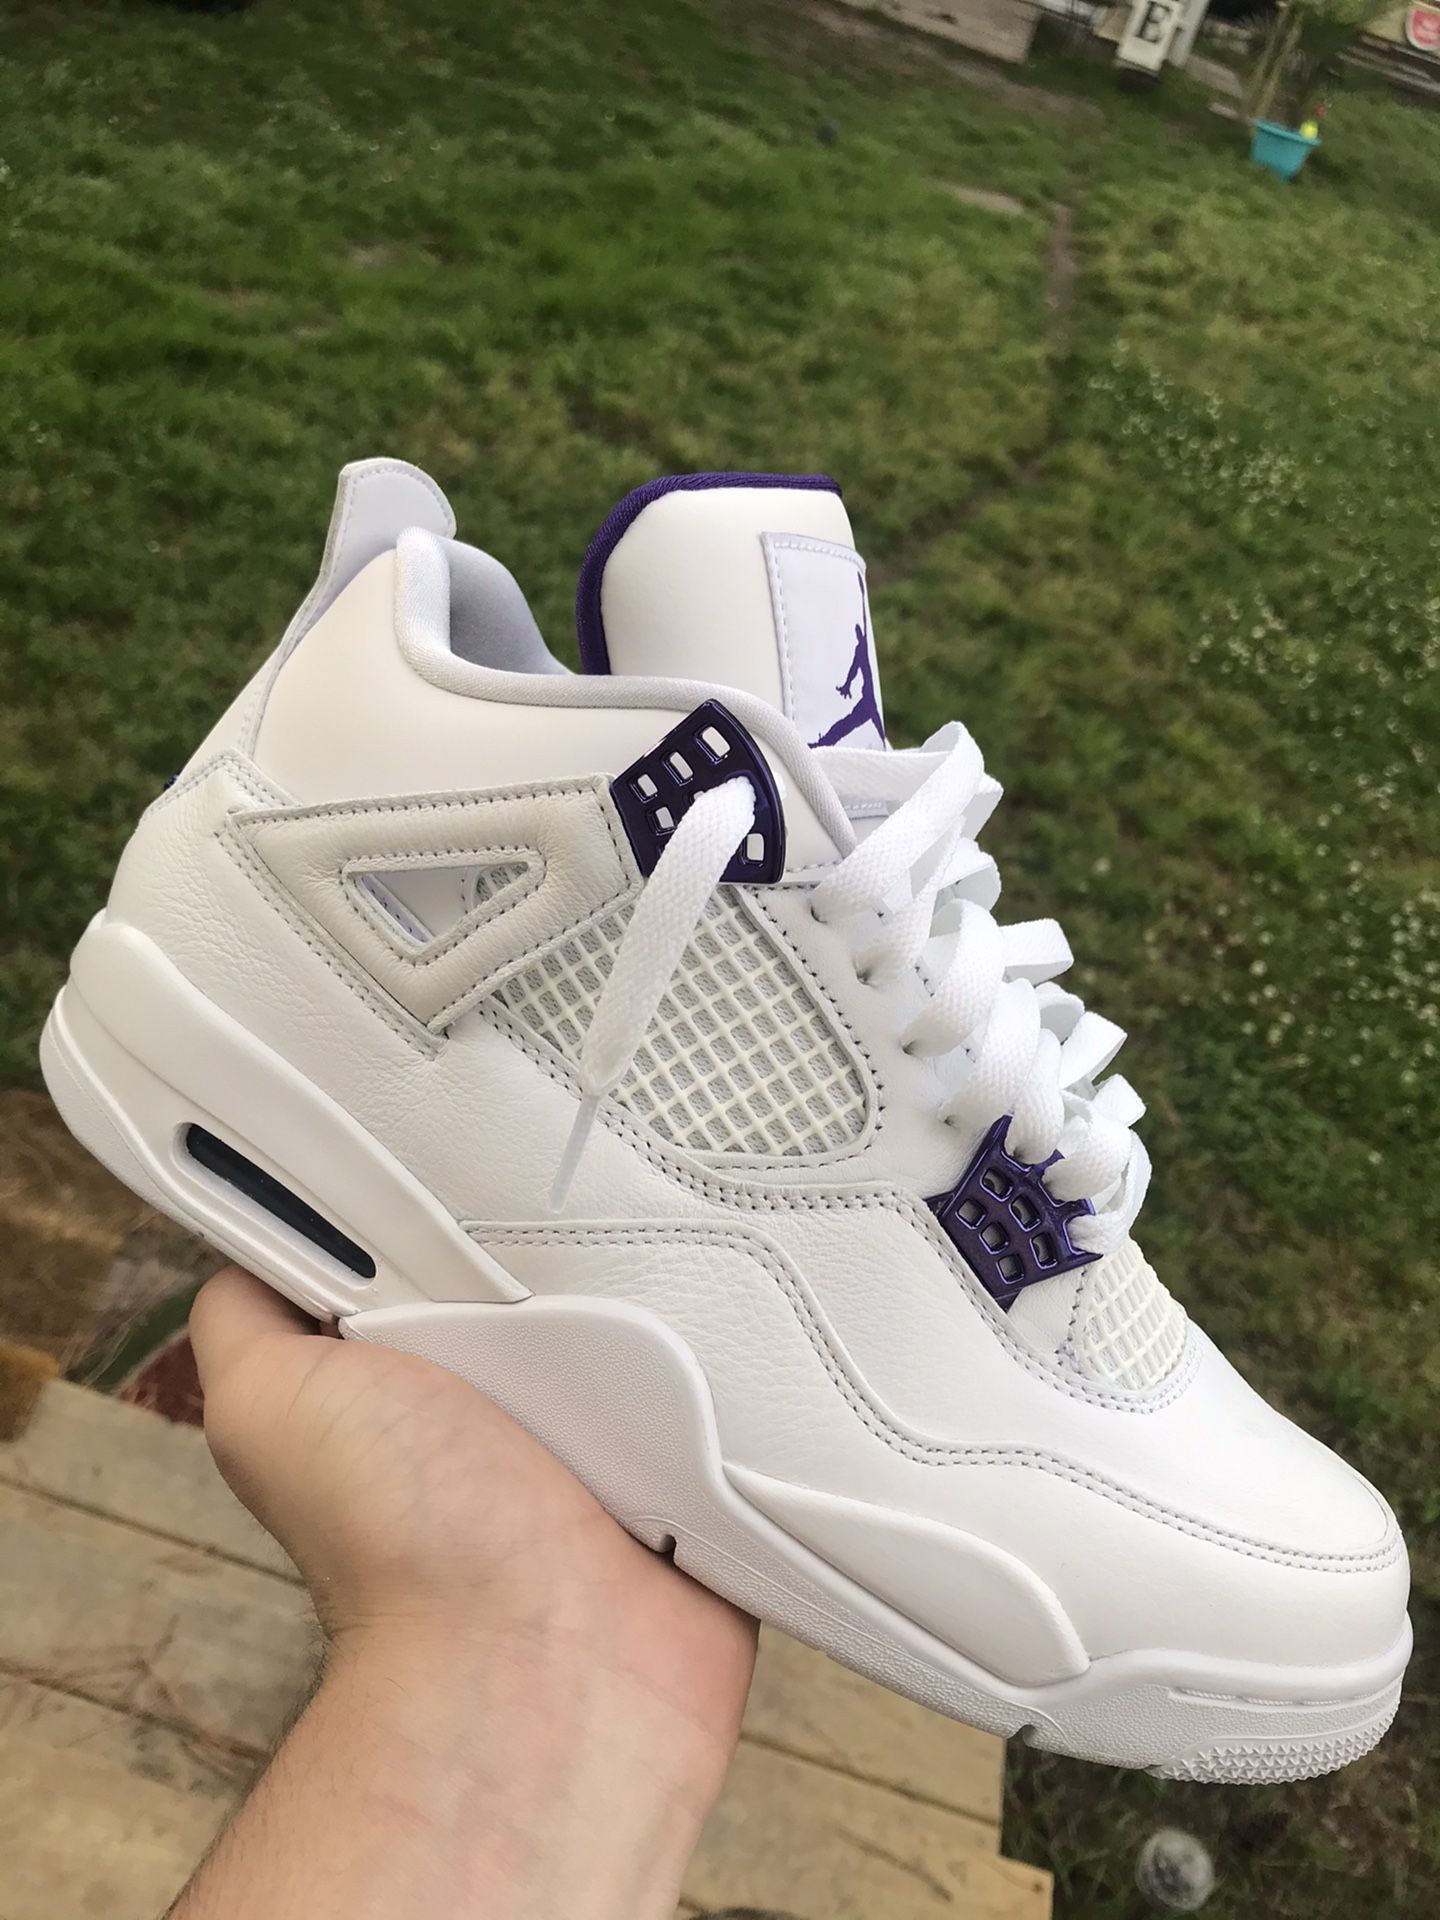 Jordan 4 metallic purple size 8.5